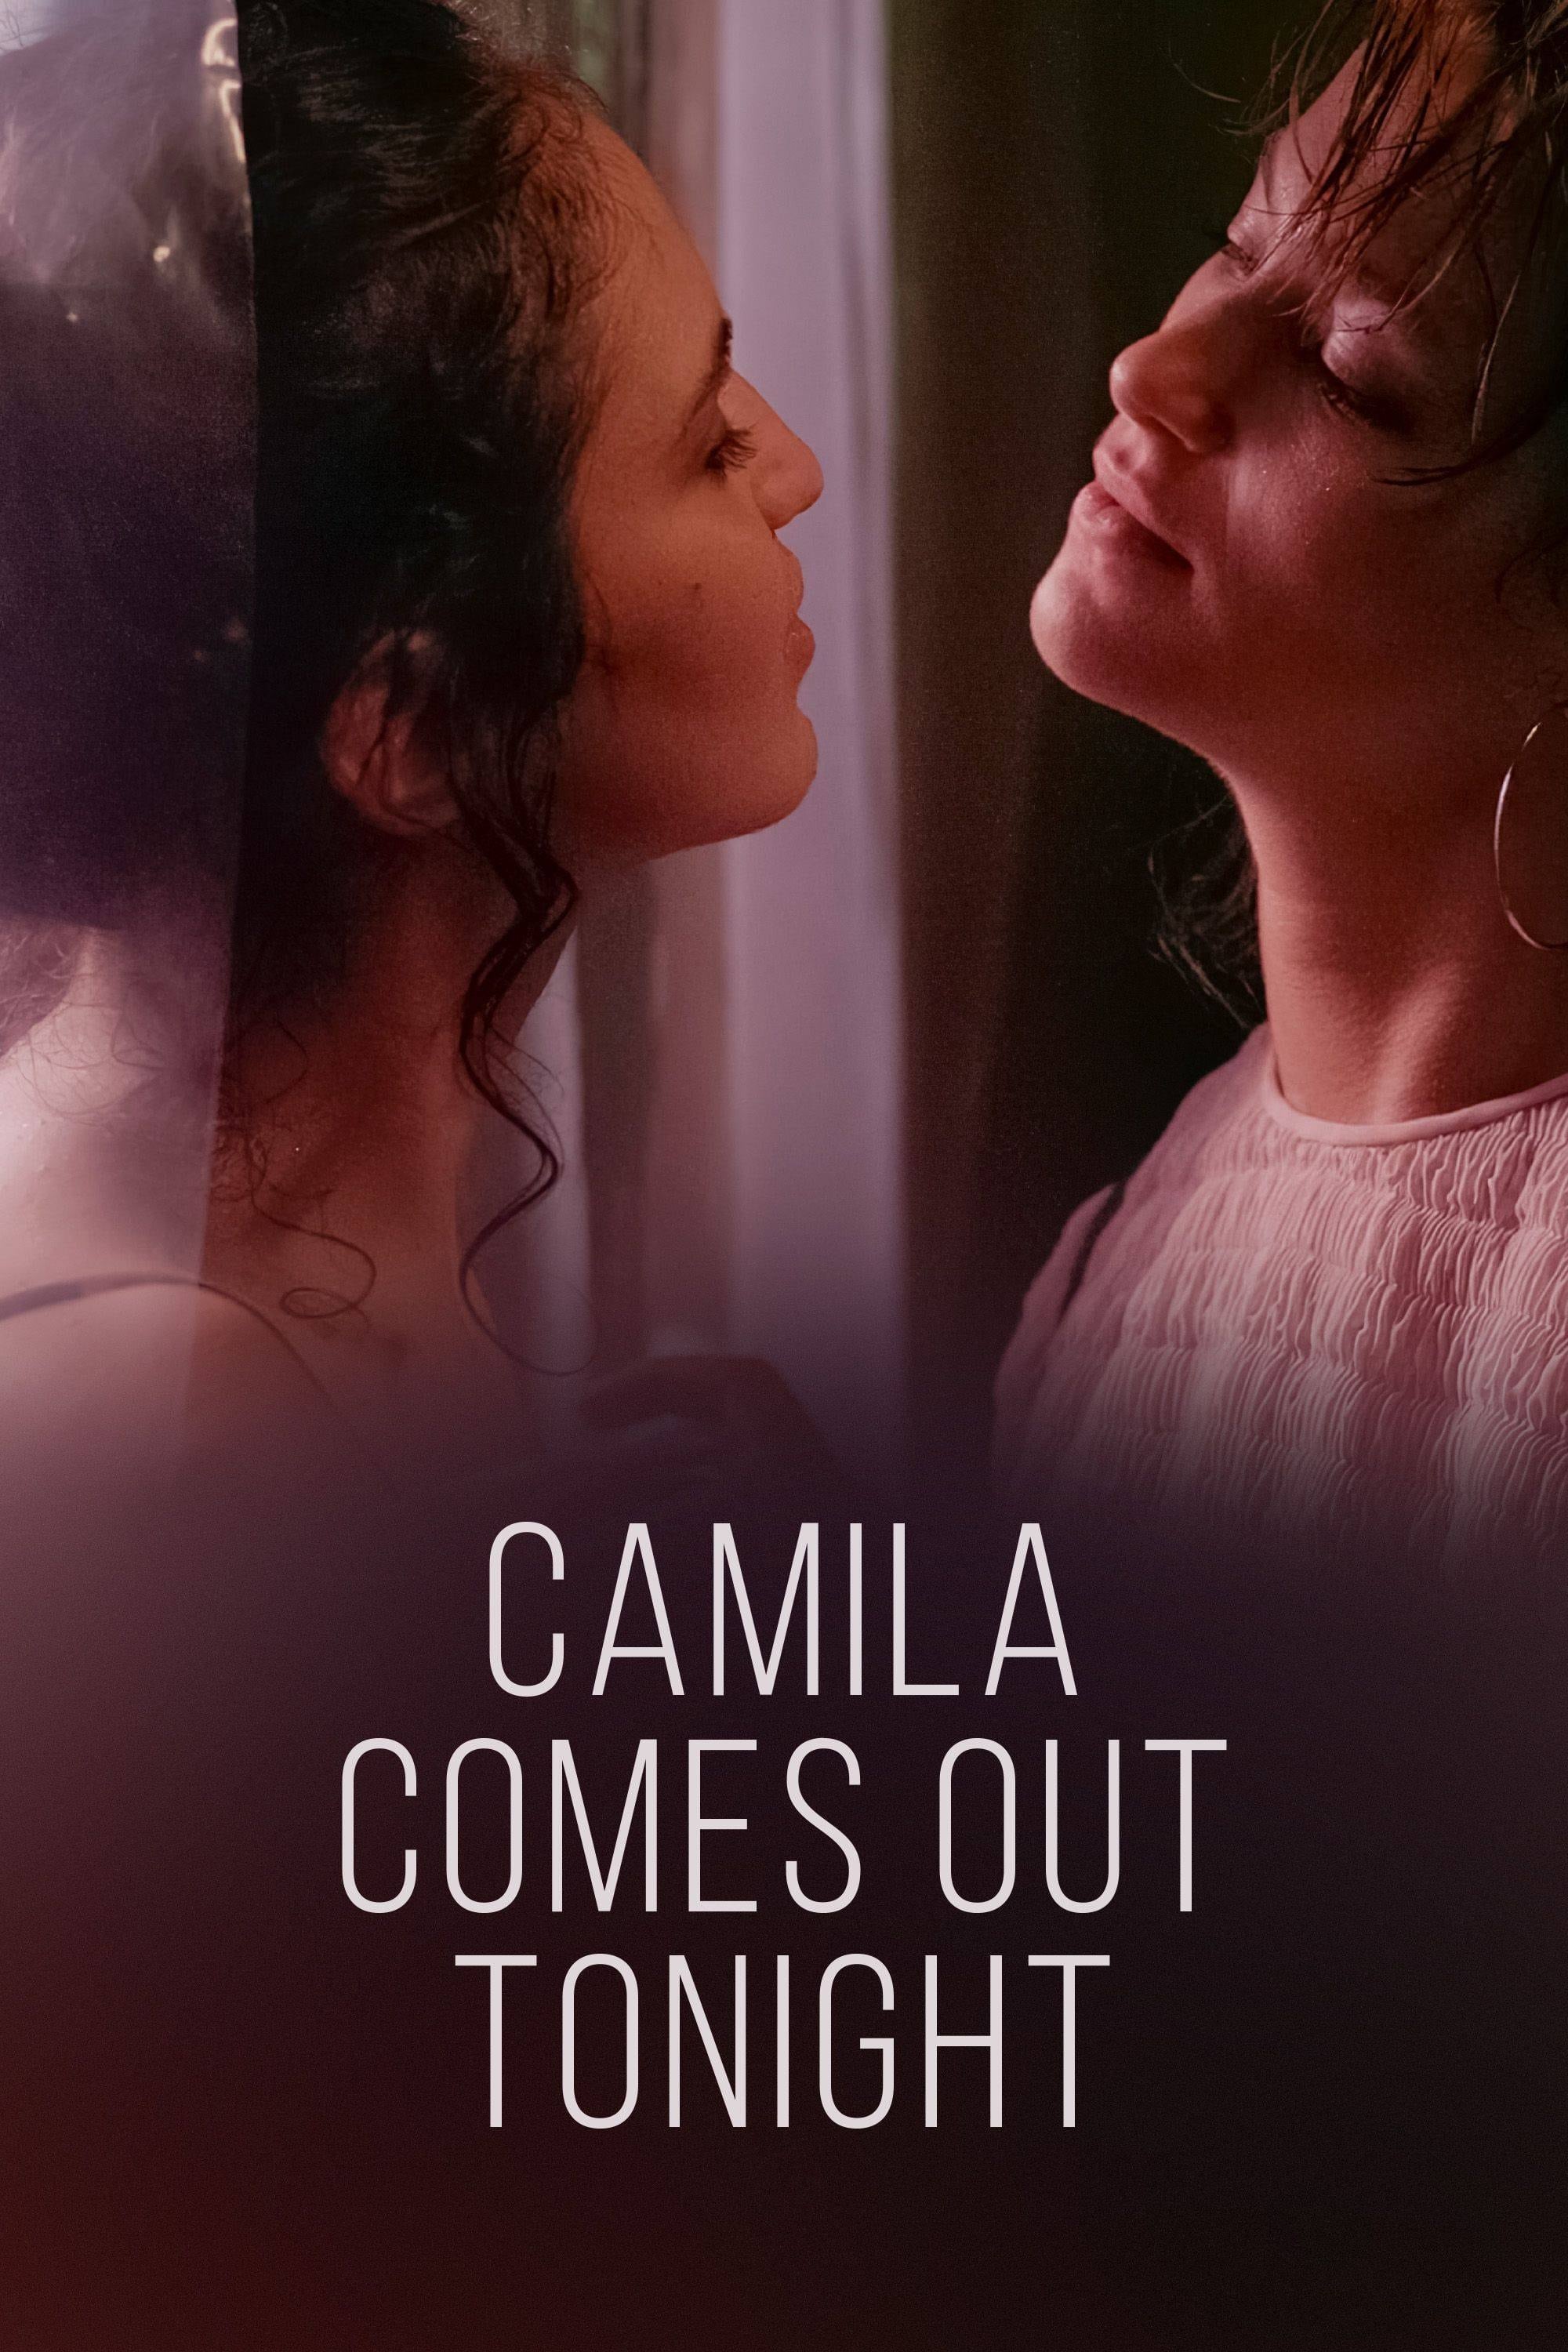 Camila saldrá esta noche poster